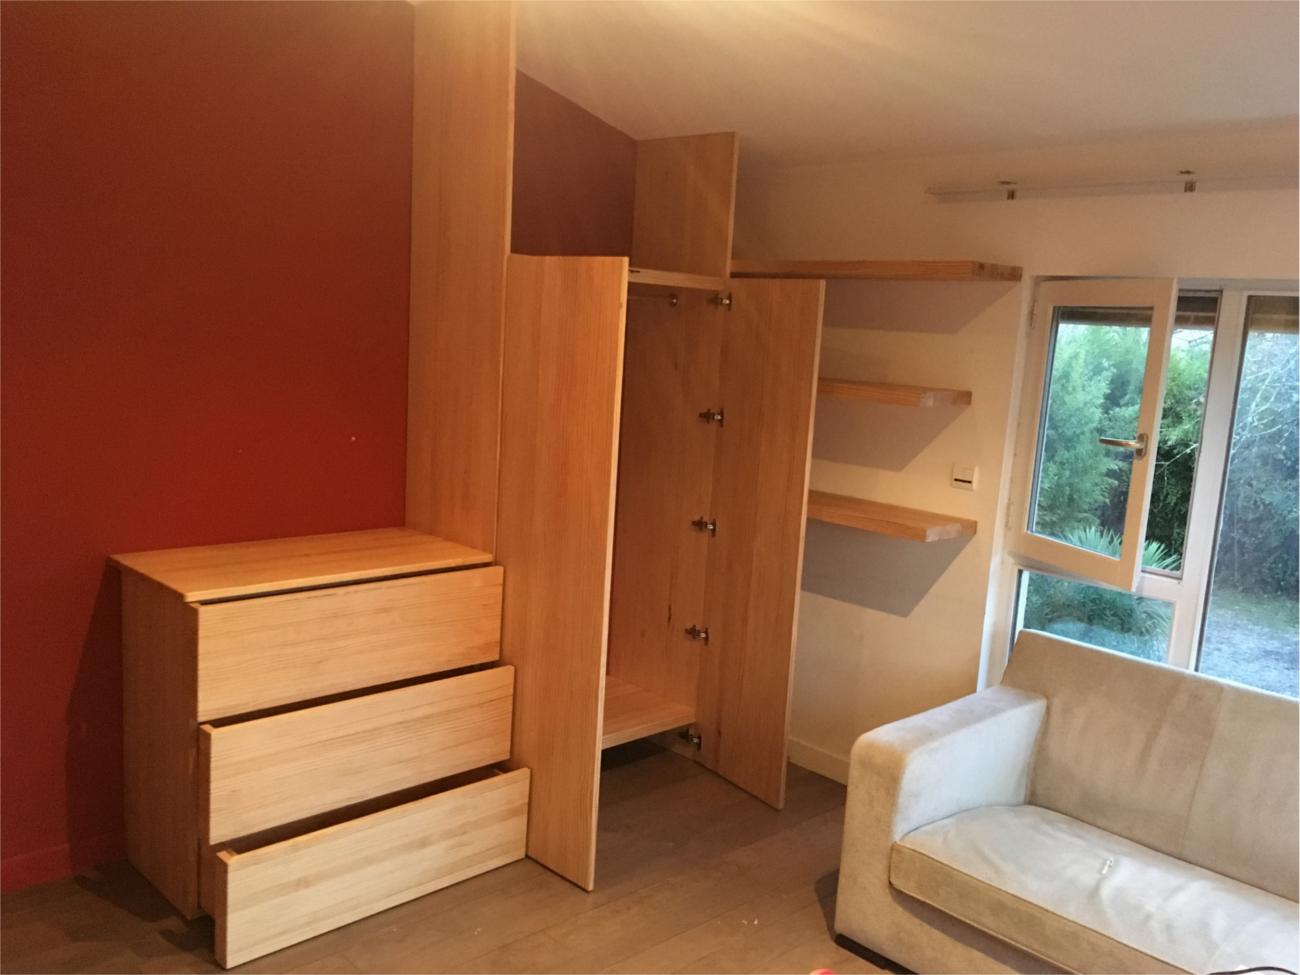 Aménagement de chambre à coucher en pin radiata avec placard, commode et étagères